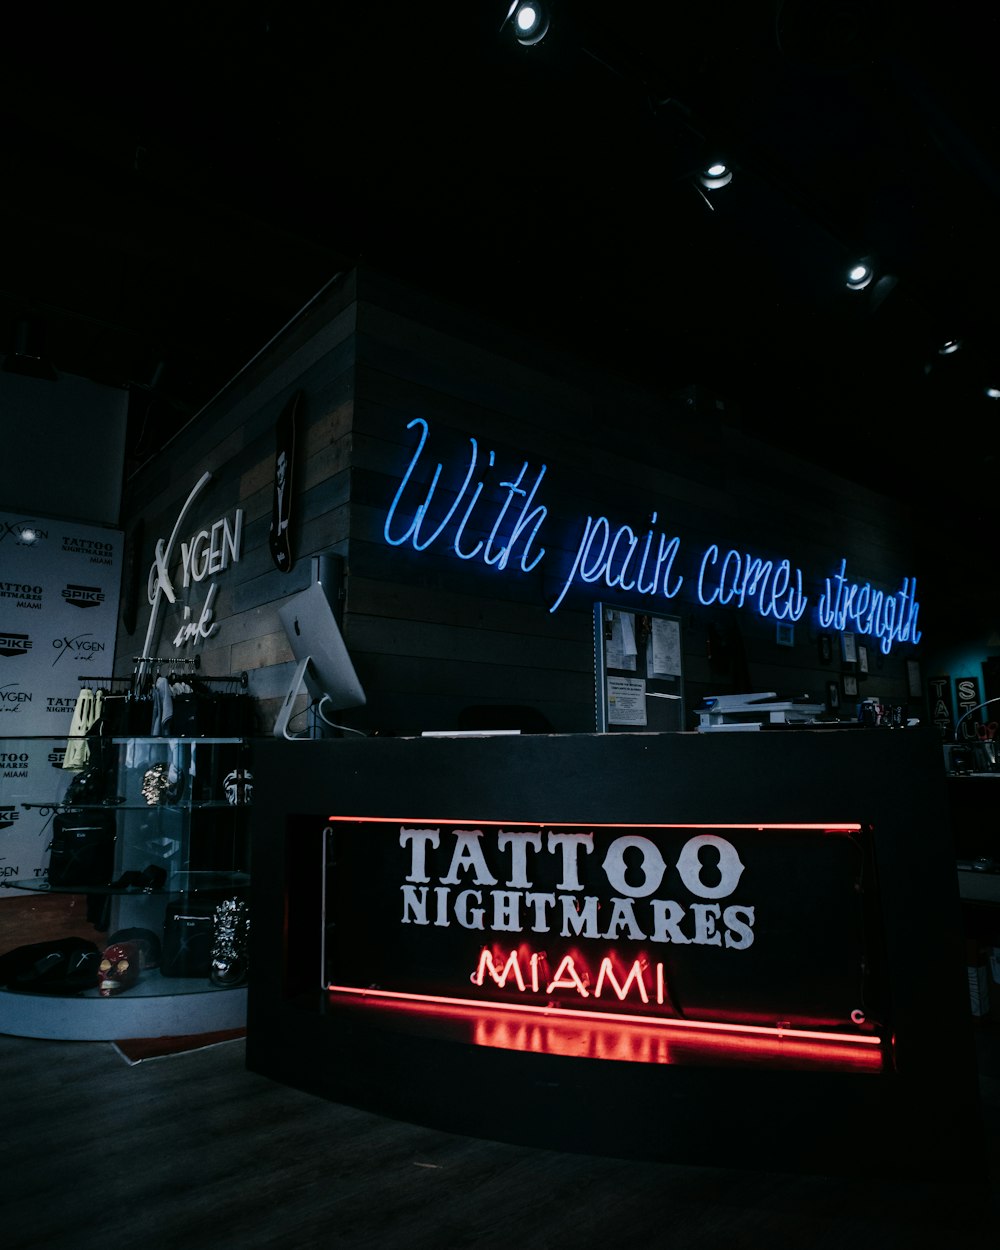 Ein Tattoo-Shop mit Neonschildern an der Wand